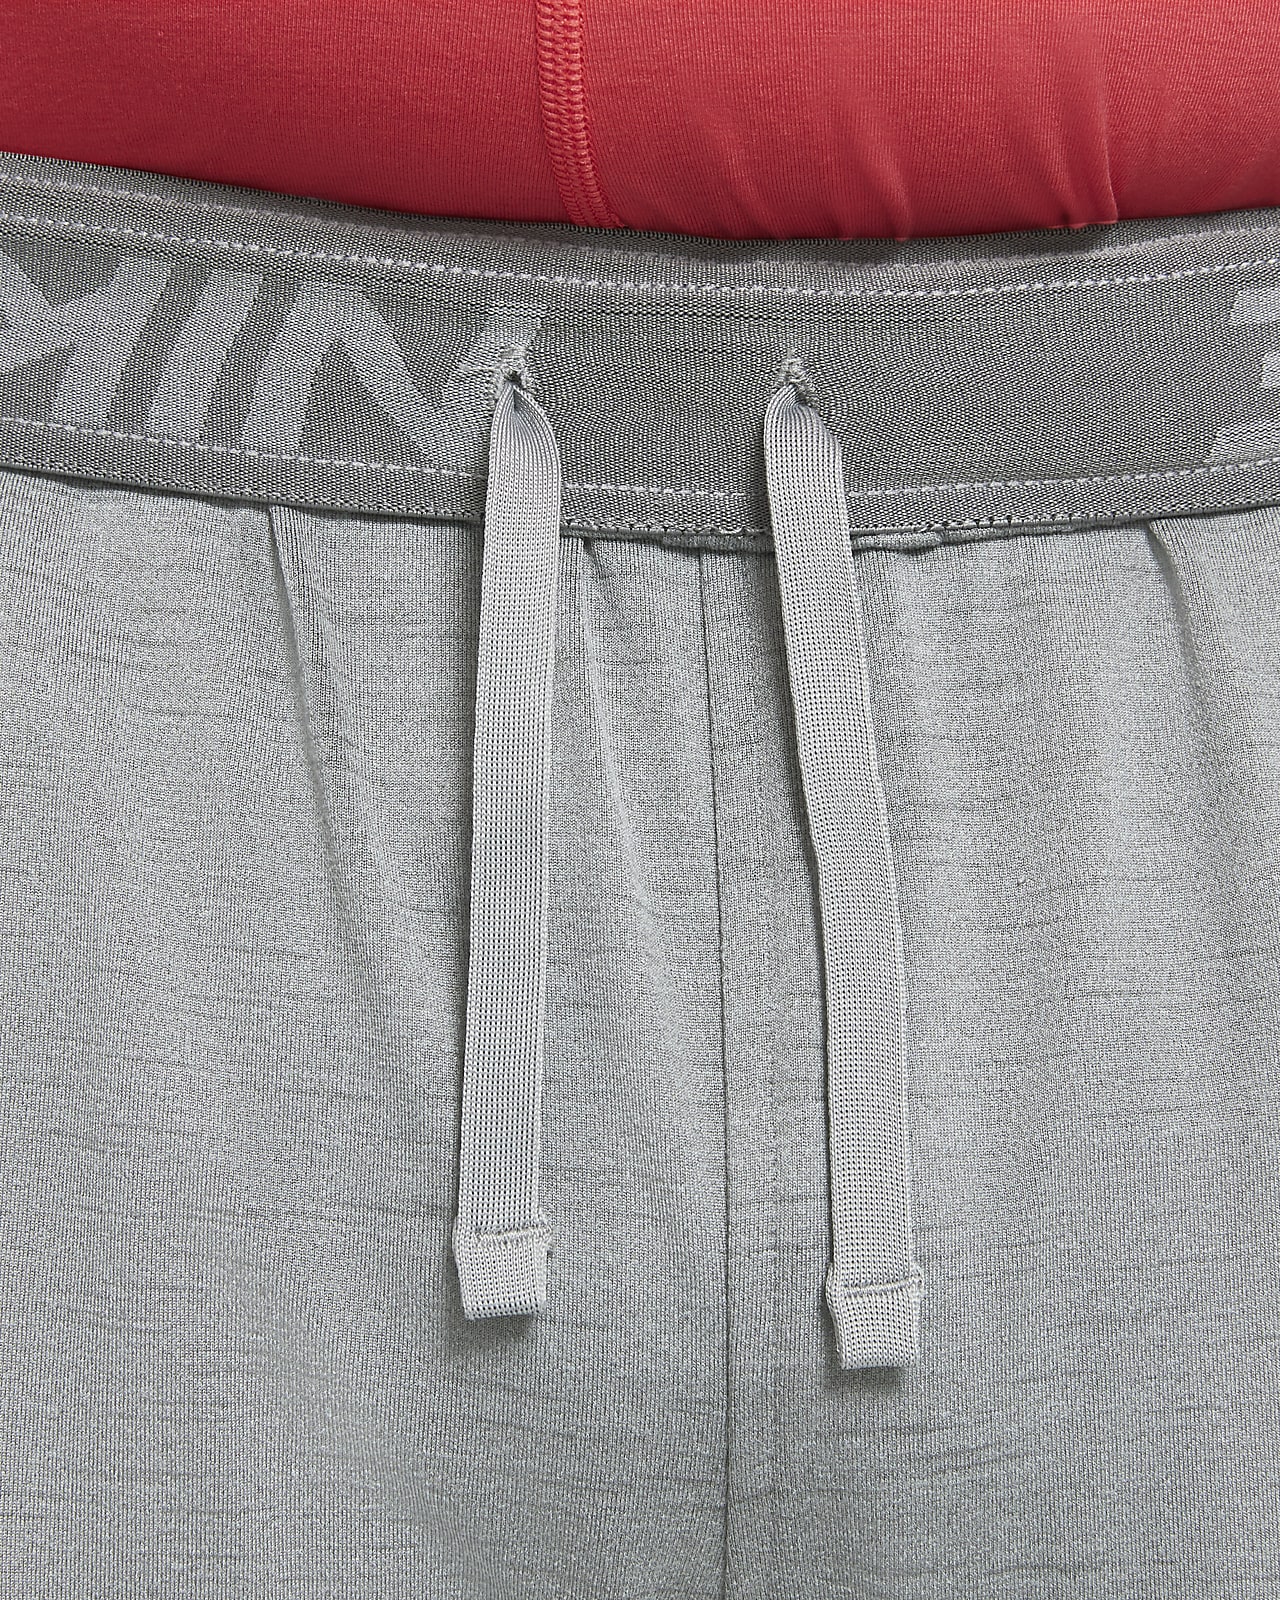 Nike Yoga Sweatpants Men Sz L Pink Fuchsia Therma-Fit Taper